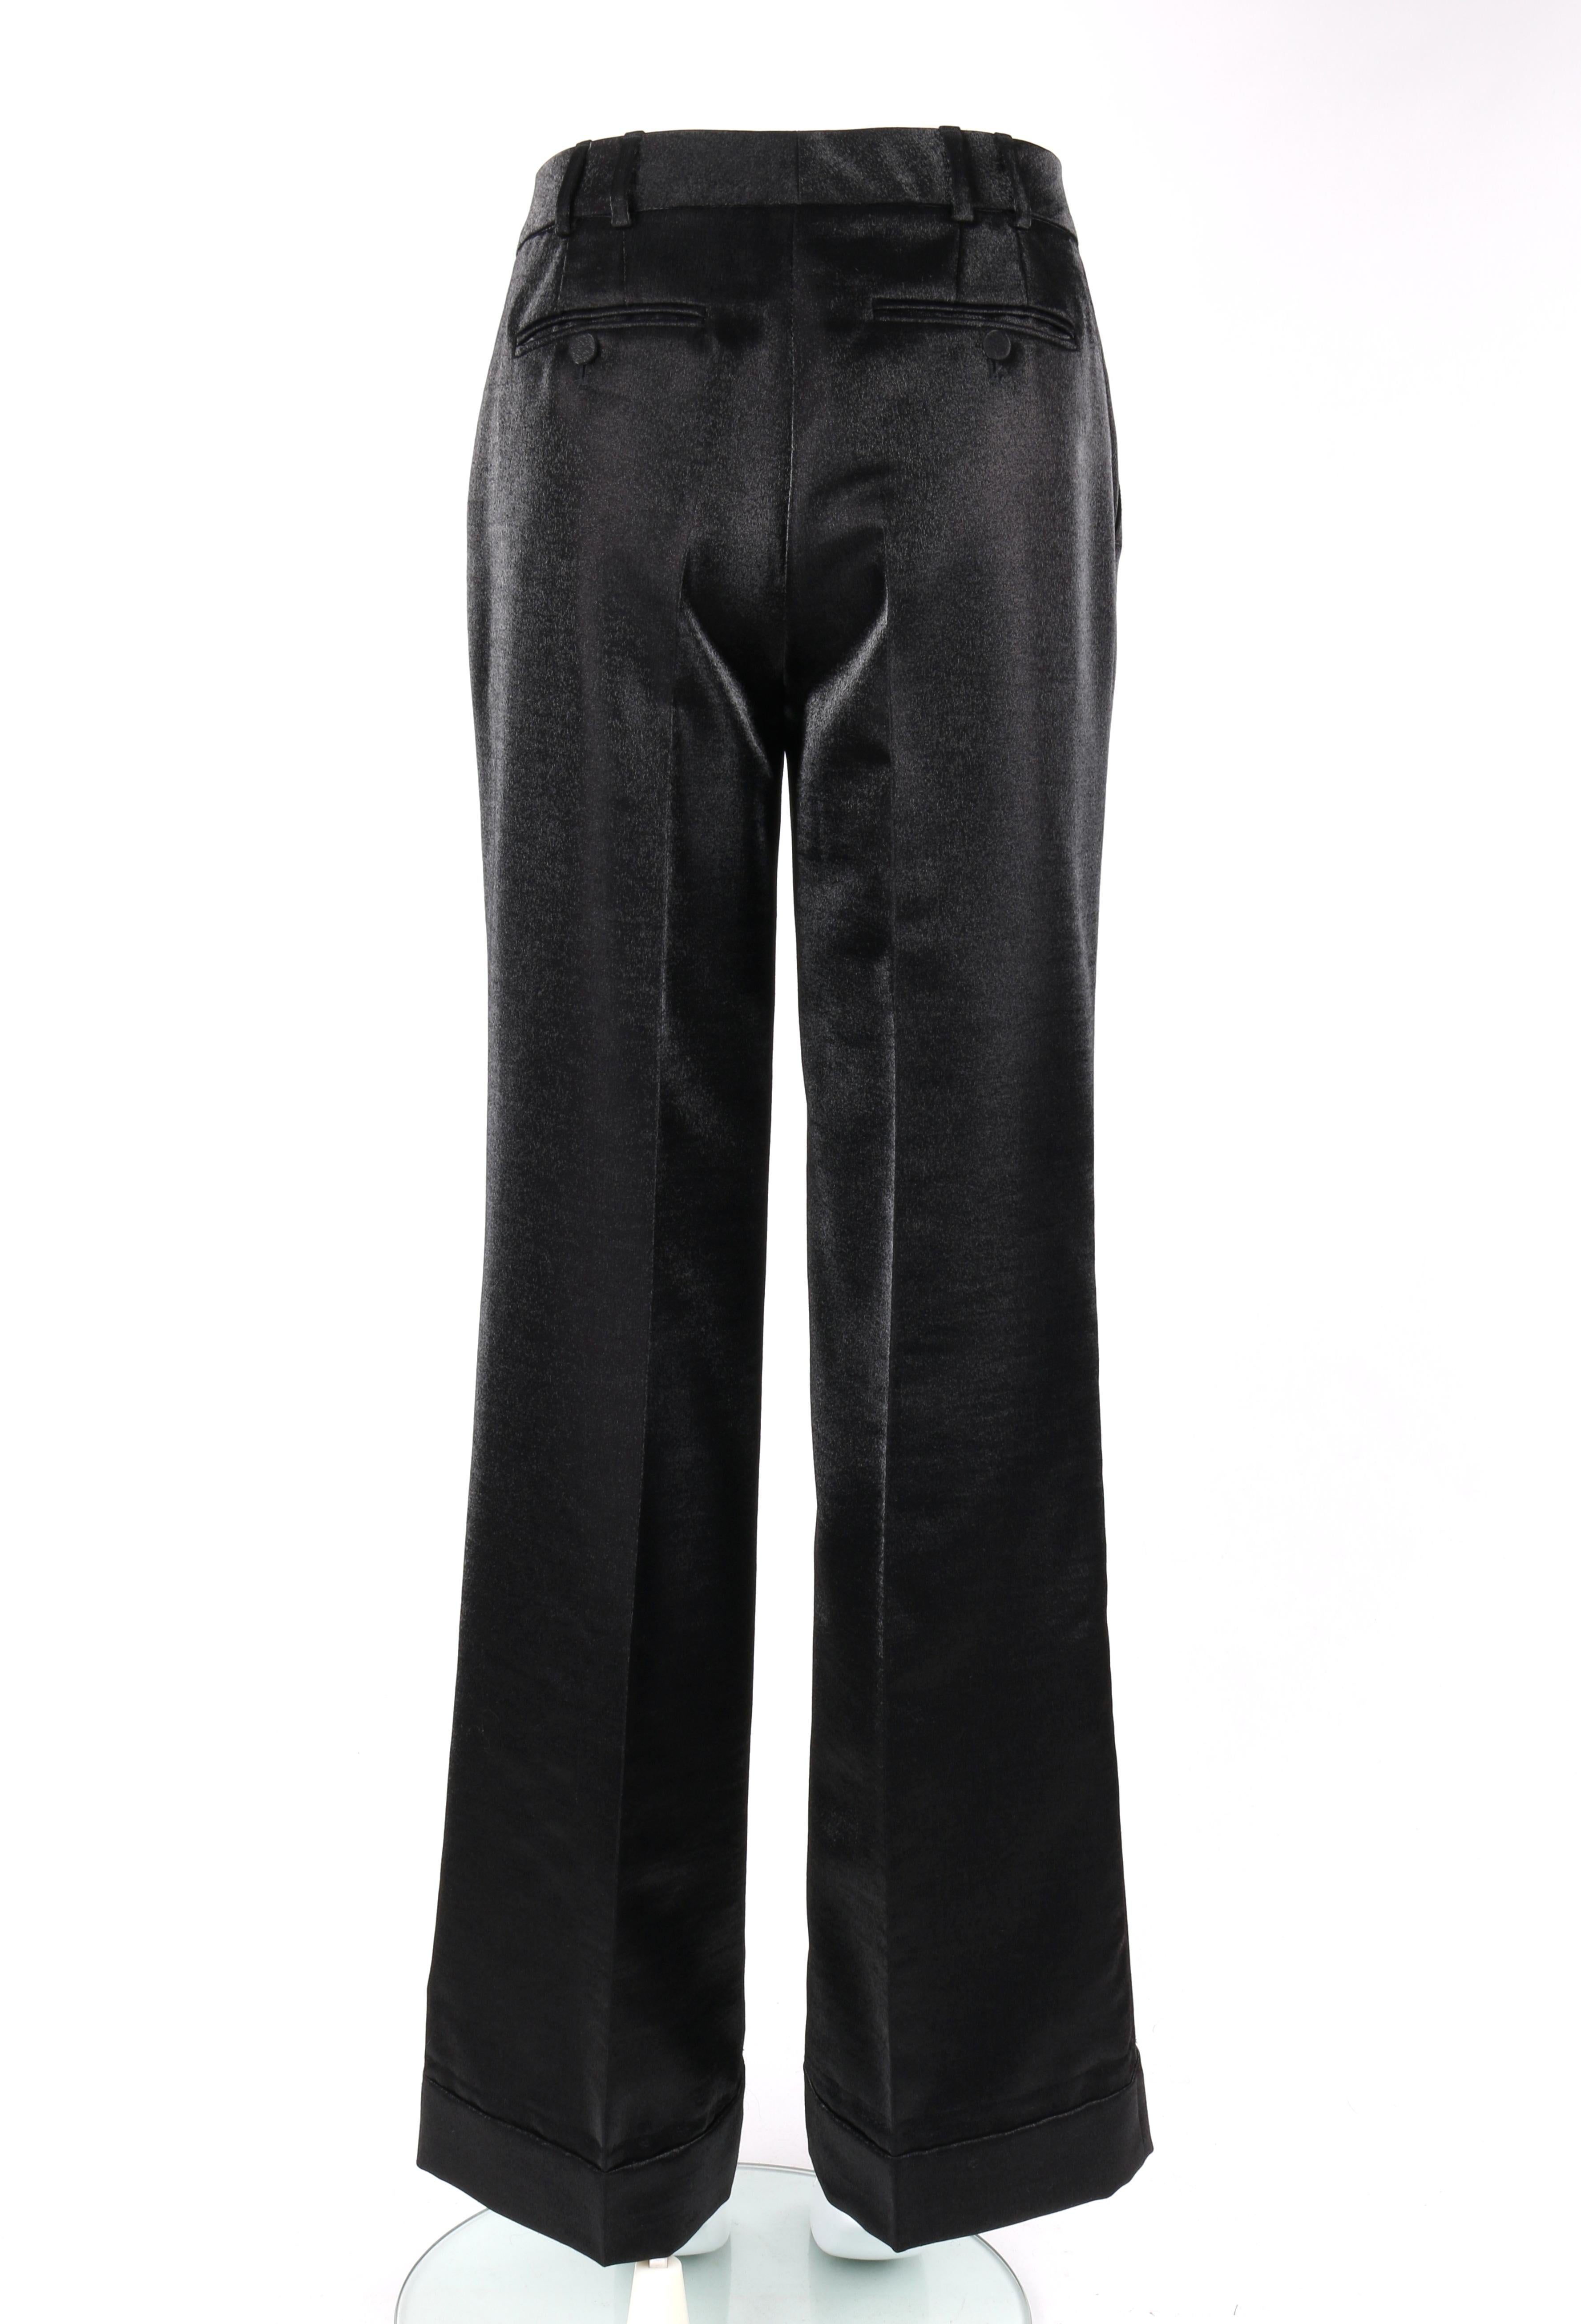 GUCCI A/W 2006 2pc Black Metallic Satin Blazer & Wide Leg Trouser Pant Suit Set 1